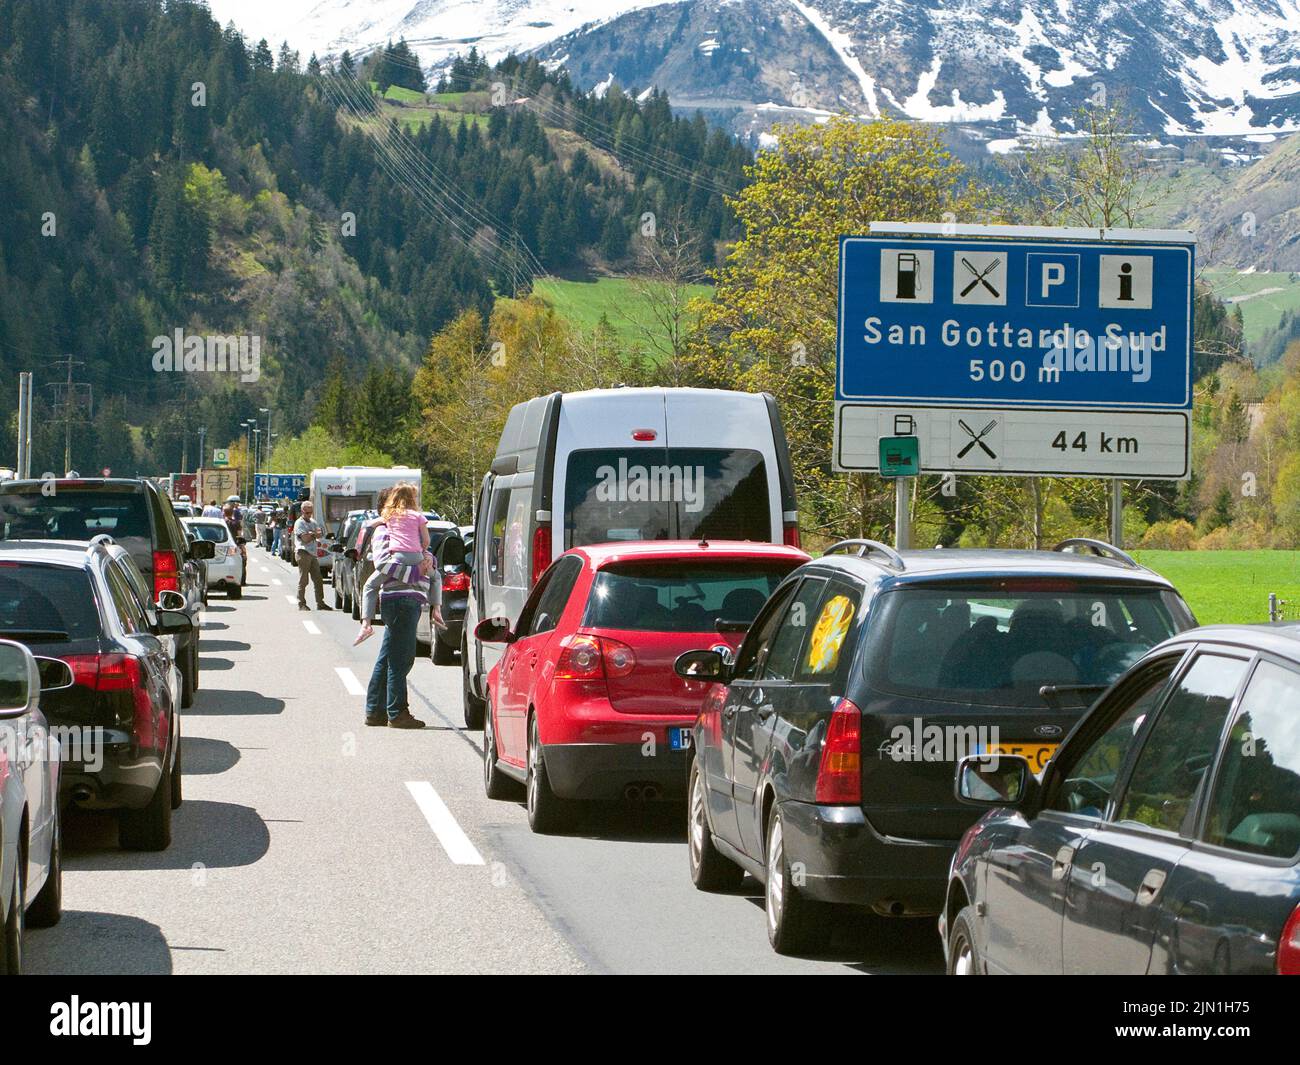 Ligne de voitures, embouteillage sur l'autoroute au tunnel de San Gotthard, Suisse, Europe Banque D'Images